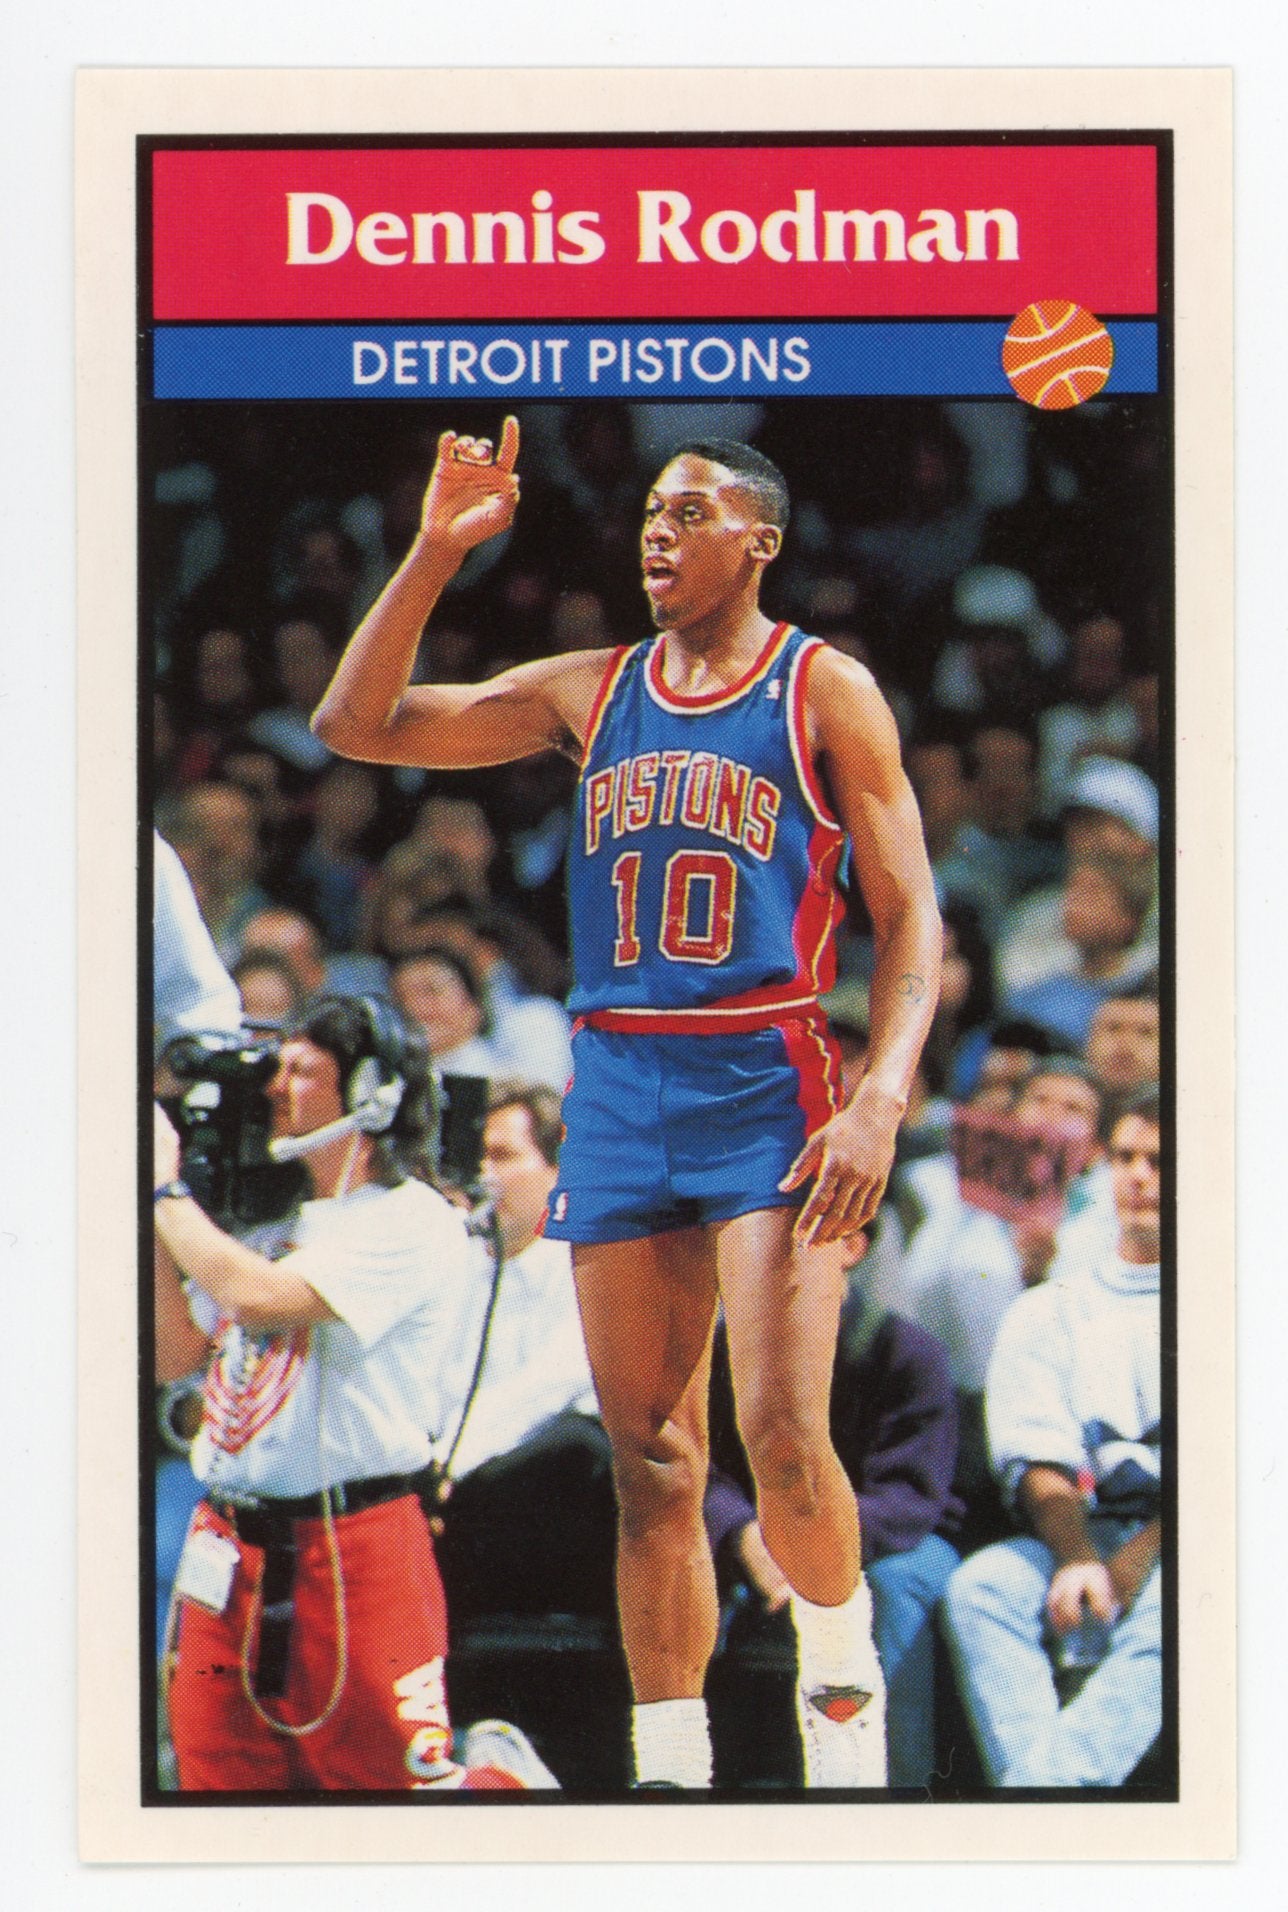 Dennis Rodman: The quintessential Detroit Pistons